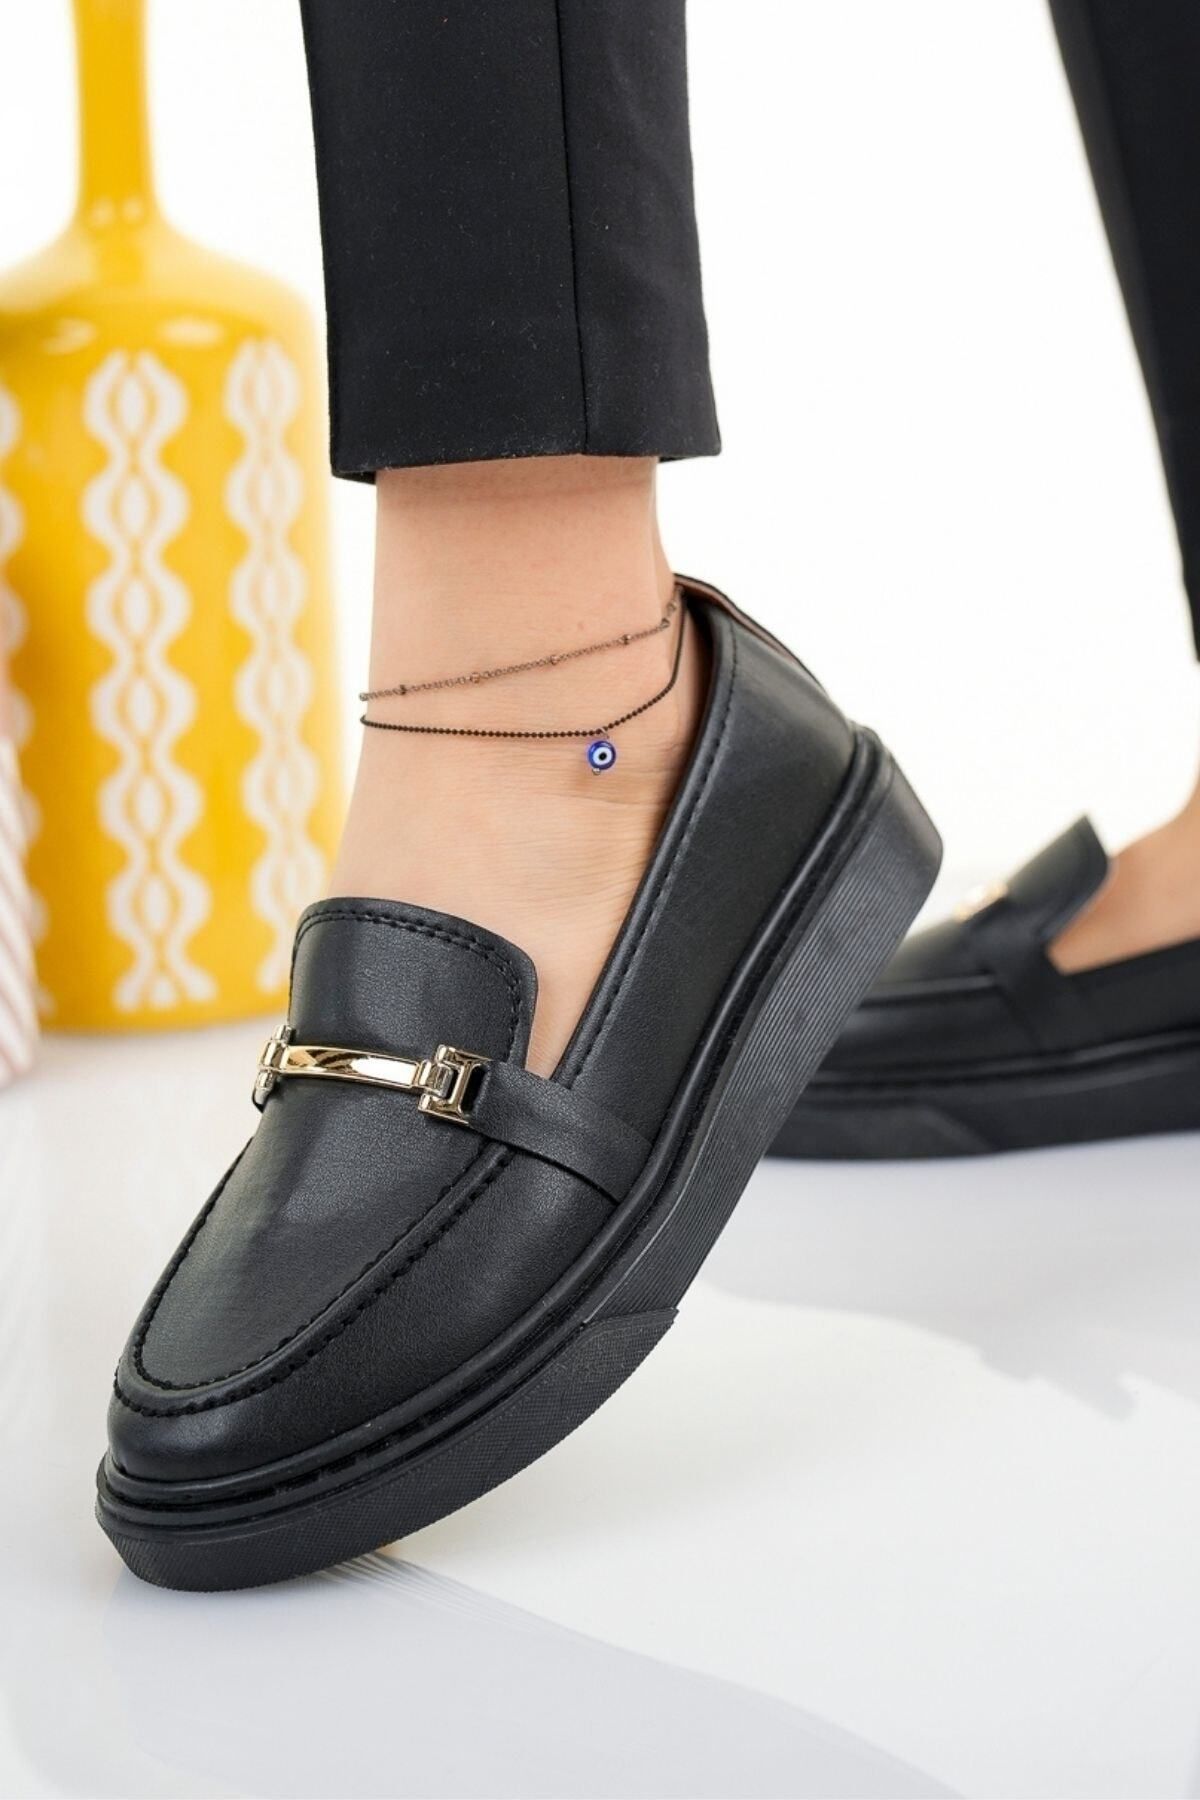 Modafırsat Kadın Siyah Kalın Taban Loafer Ayakkabı Iş Ofis Günlük Ortopedik Babet Ayakkabı